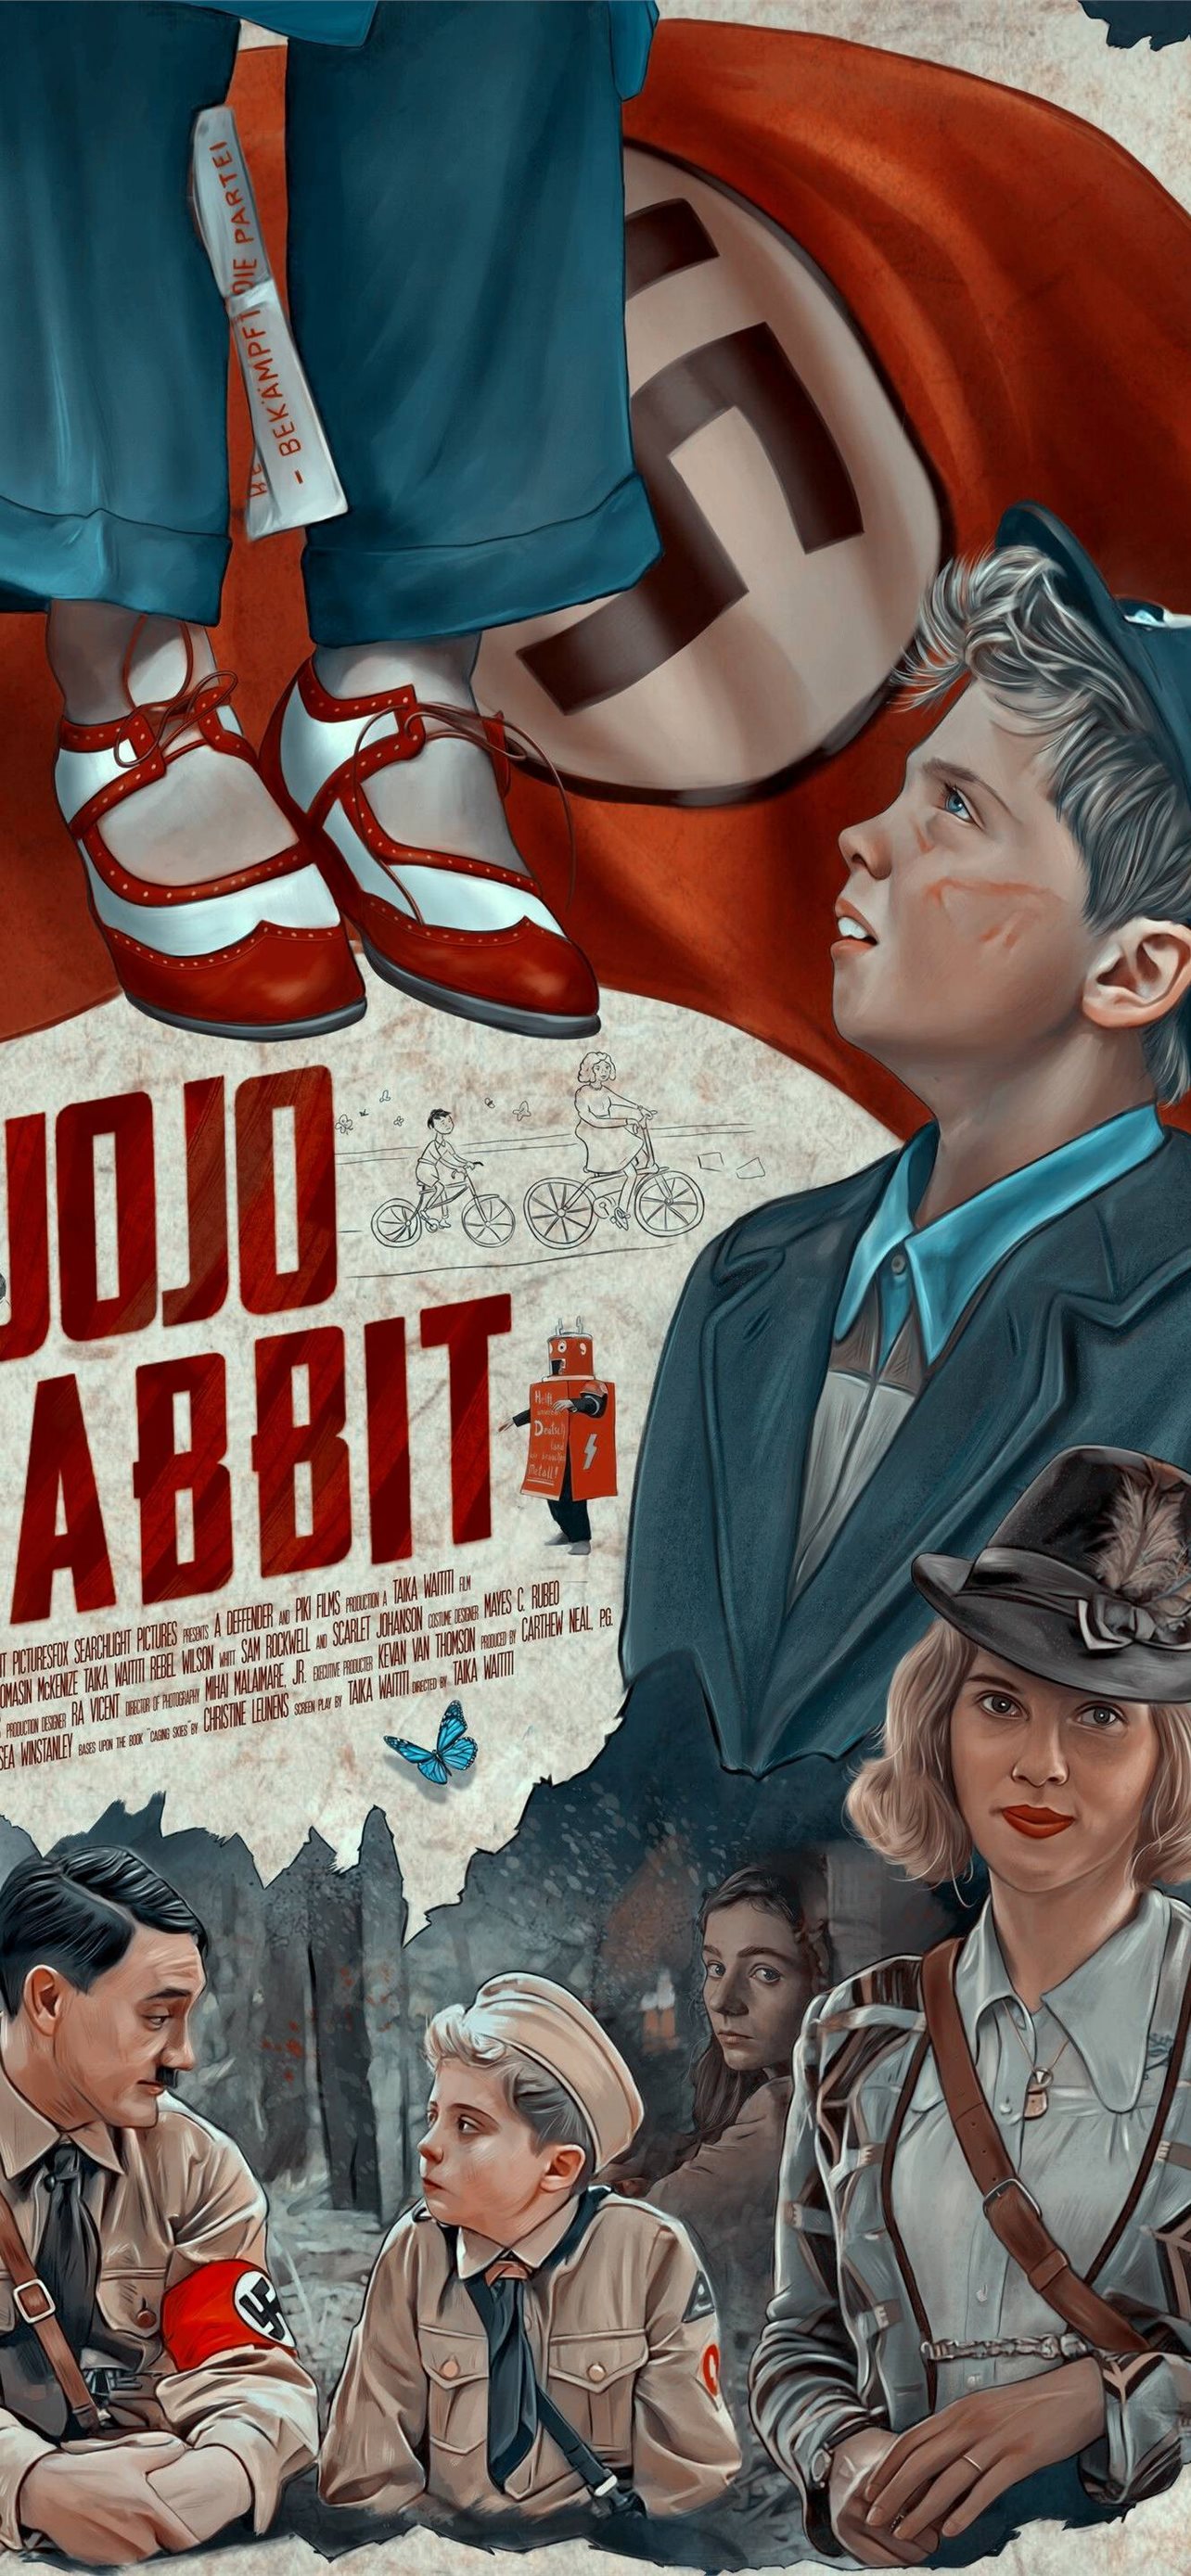 Jojo Rabbit Iphone Wallpapers Free Download